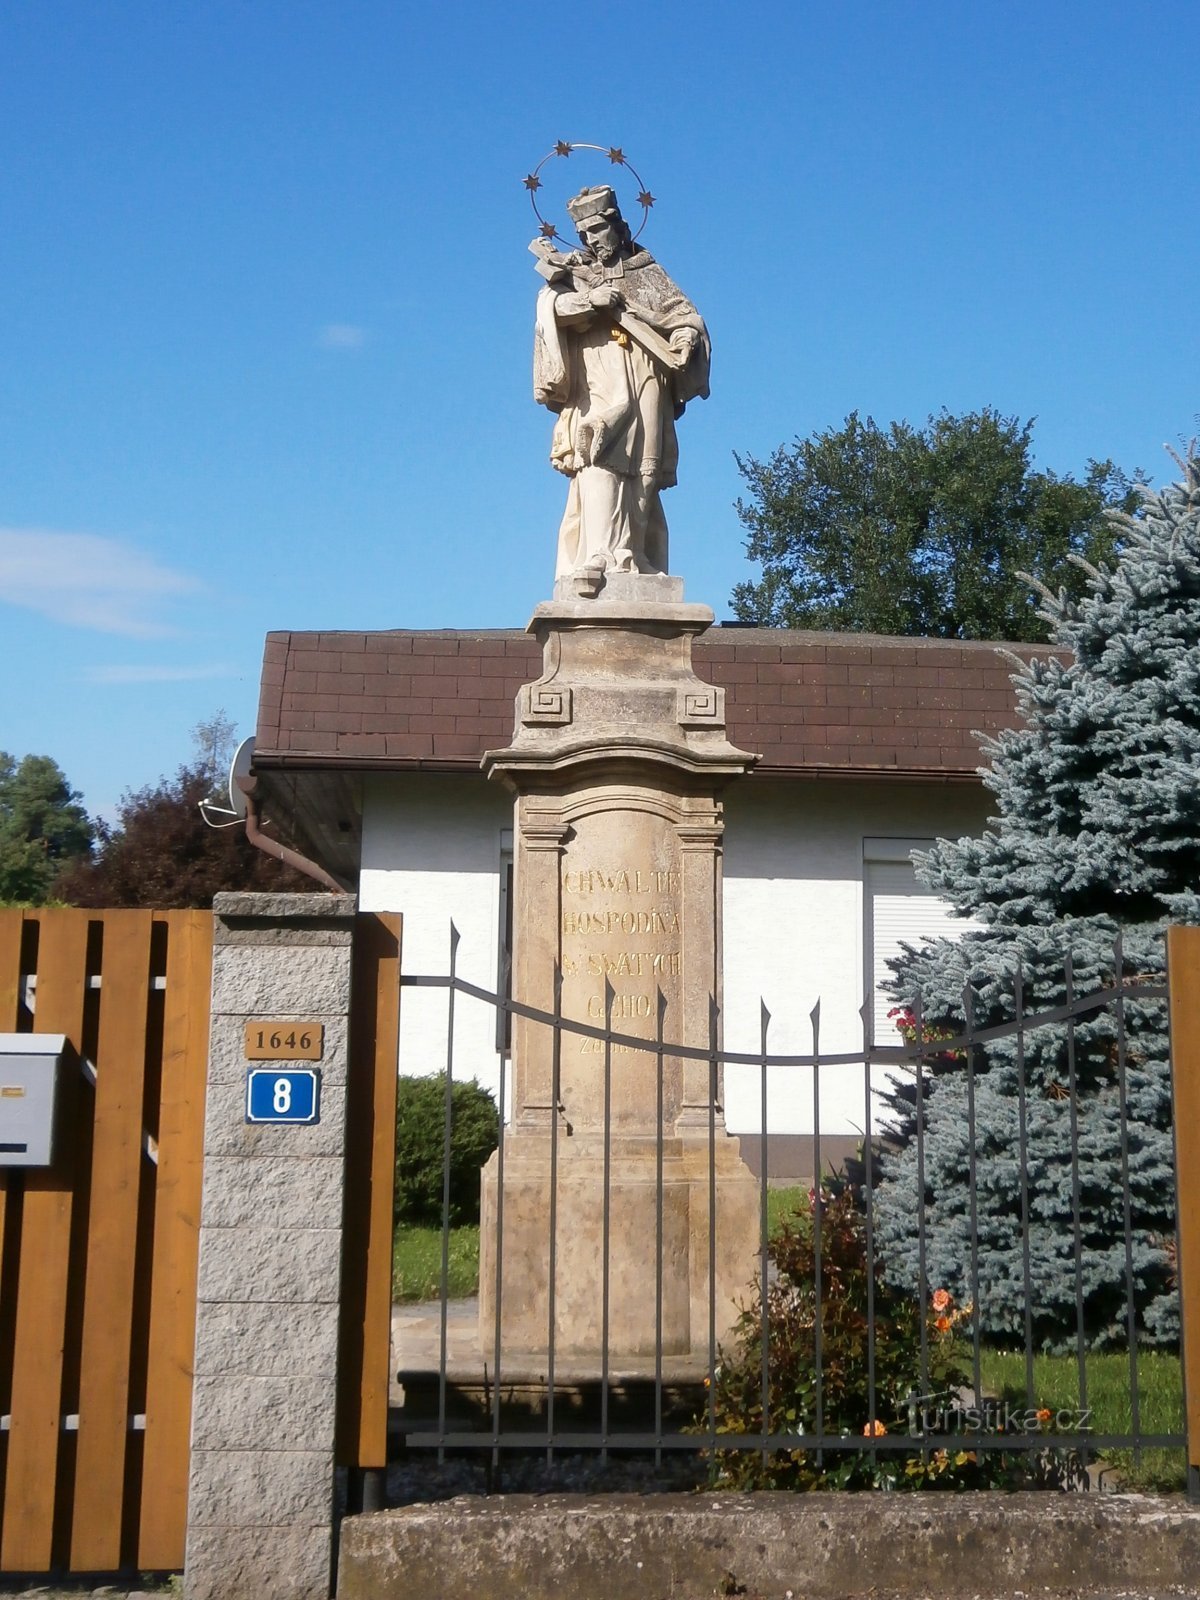 Posąg św. Jana Nepomuckiego na ulicy Medkovej (Hradec Králové, 29.7.2017)